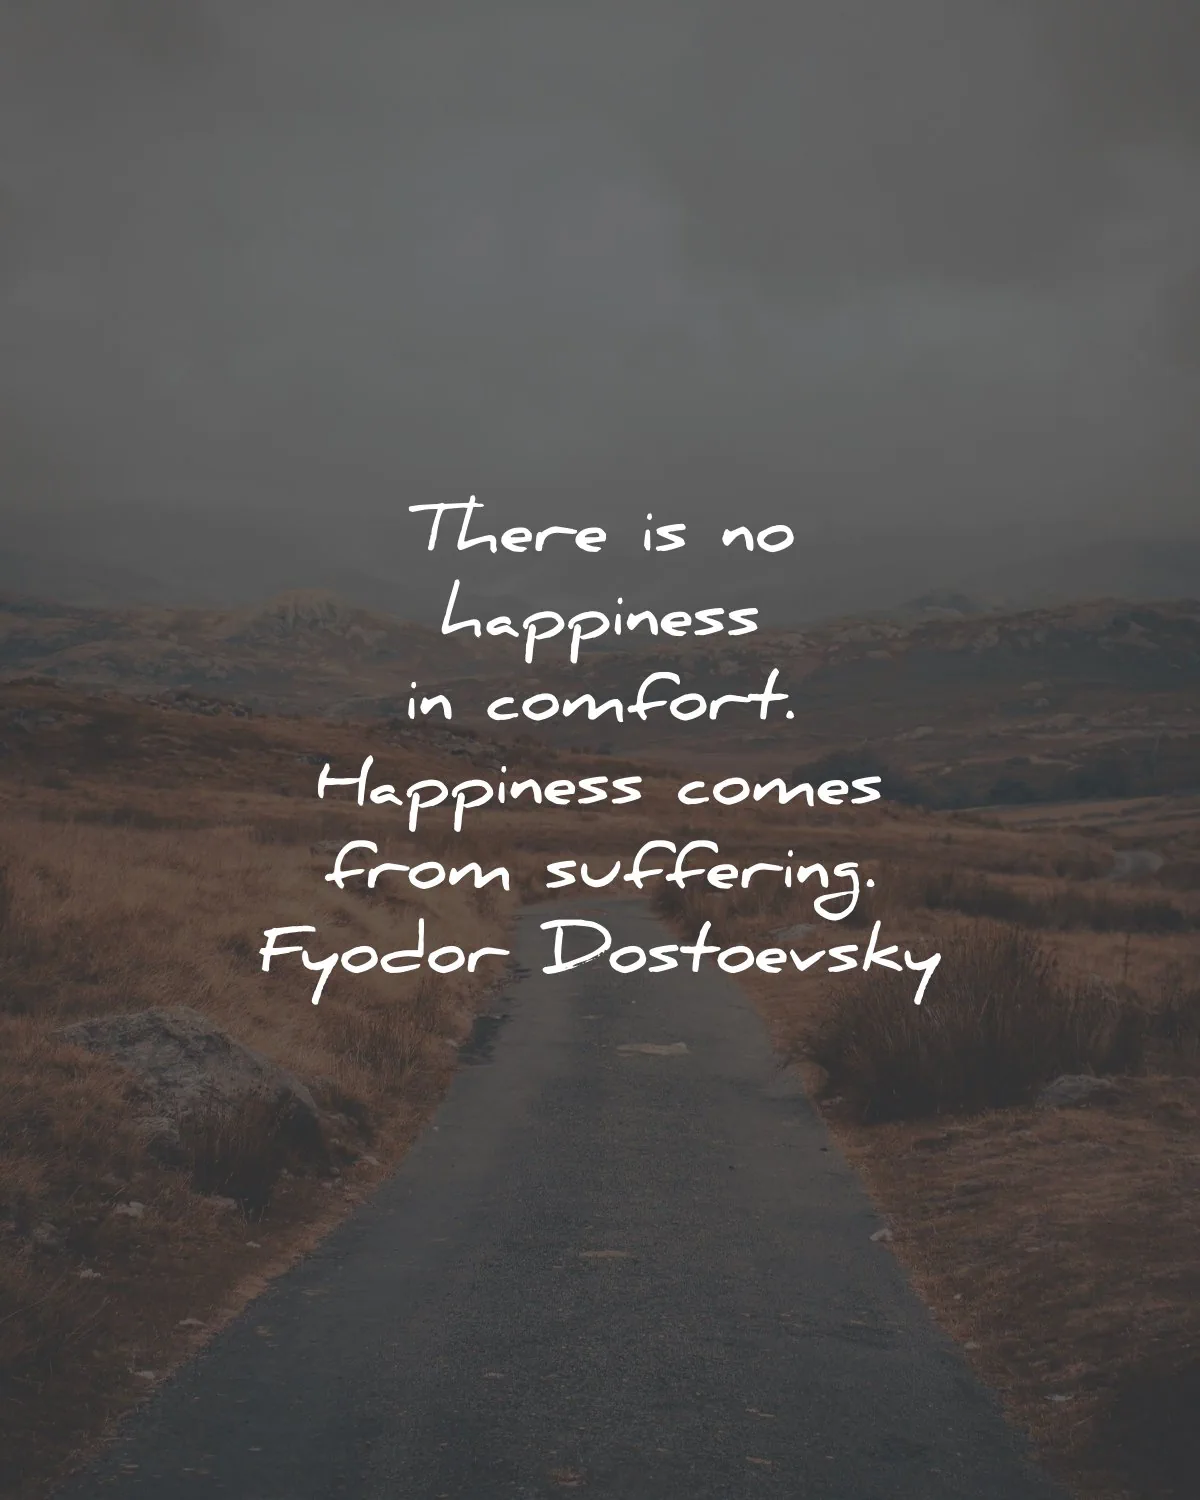 fyodor dostoevsky quotes happiness comfort suffering wisdom